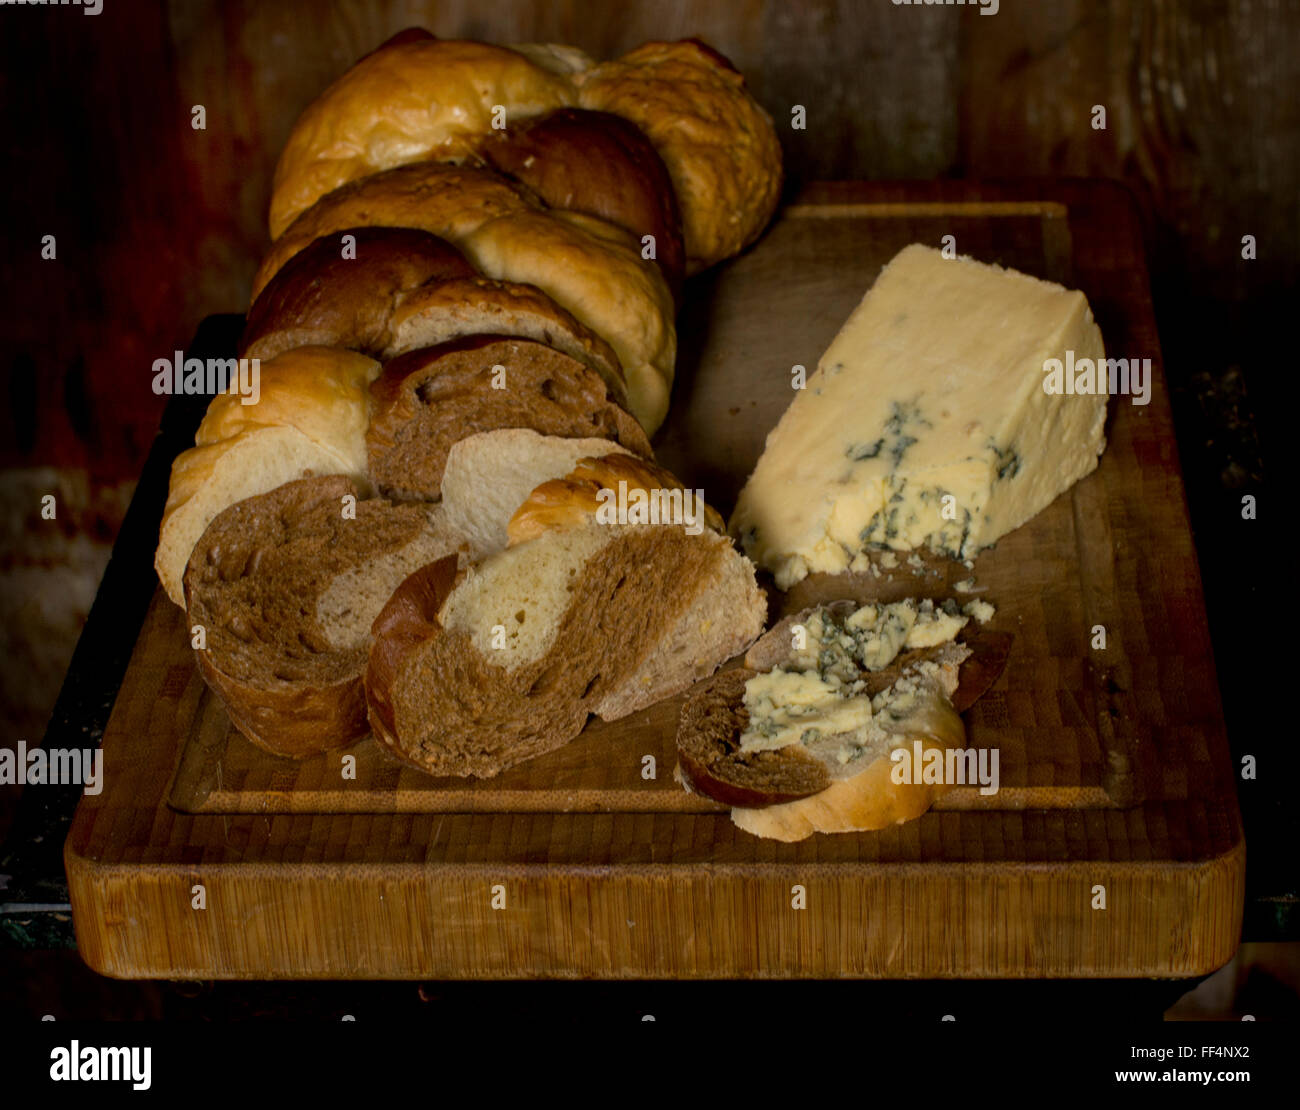 Miche de pain tressé et wedge de Stilton cheese sur une planche à découper Banque D'Images